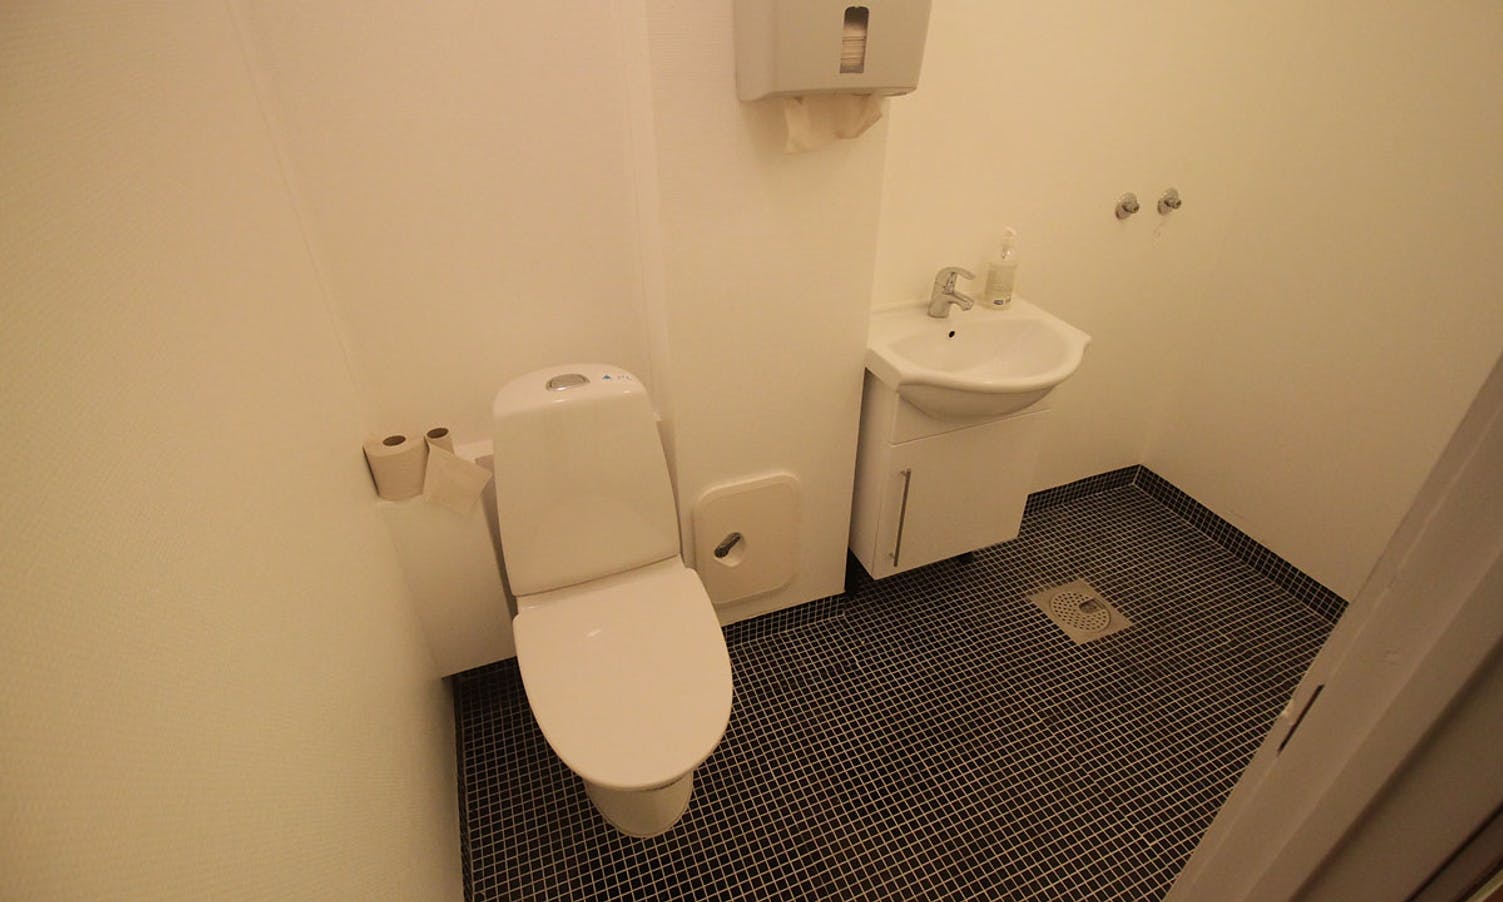 Toalett og dusj er slått saman til ein liten garderobe. (foto: KVB)